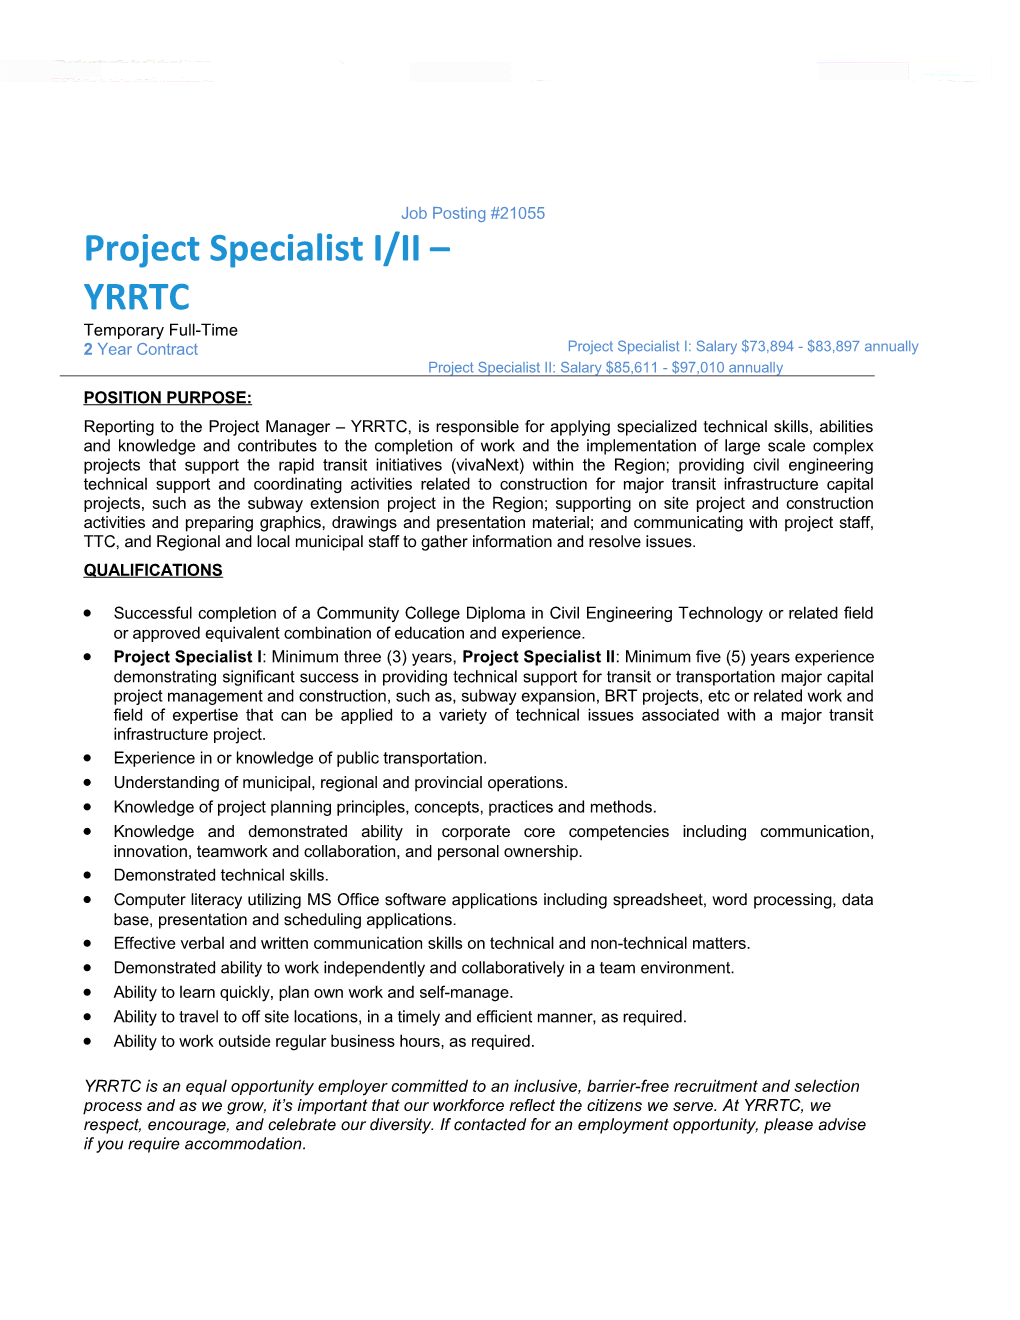 Project Specialist I/II YRRTC